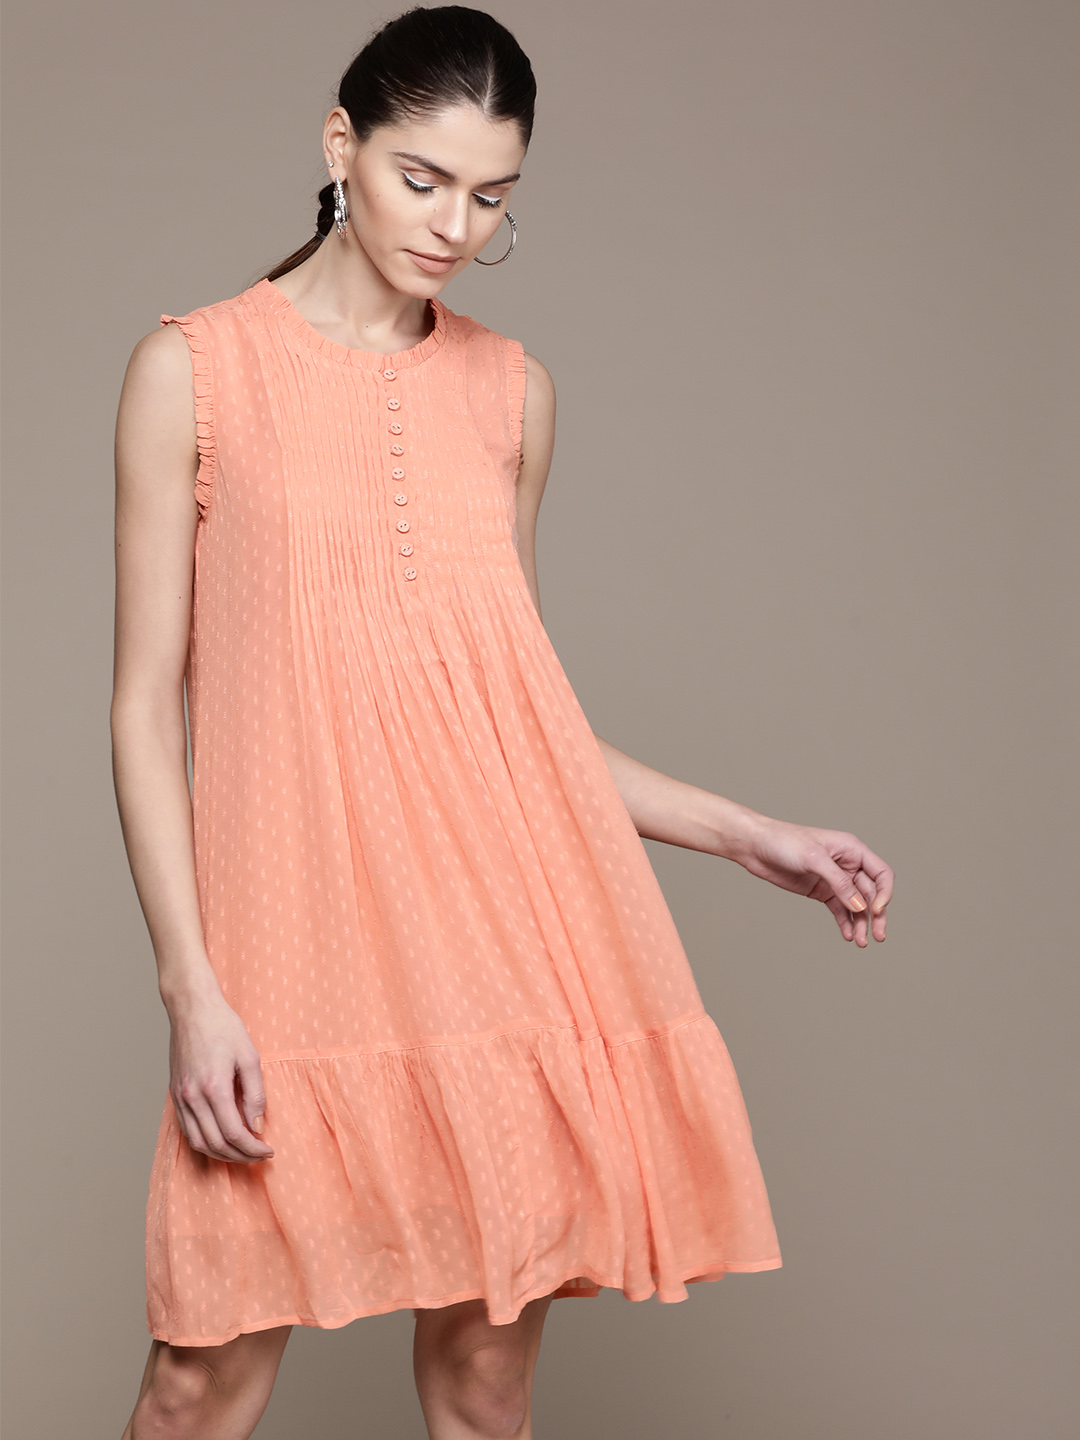 Label Ritu Kumar Women Peach-Coloured Self Design A-Line Dress Price in India